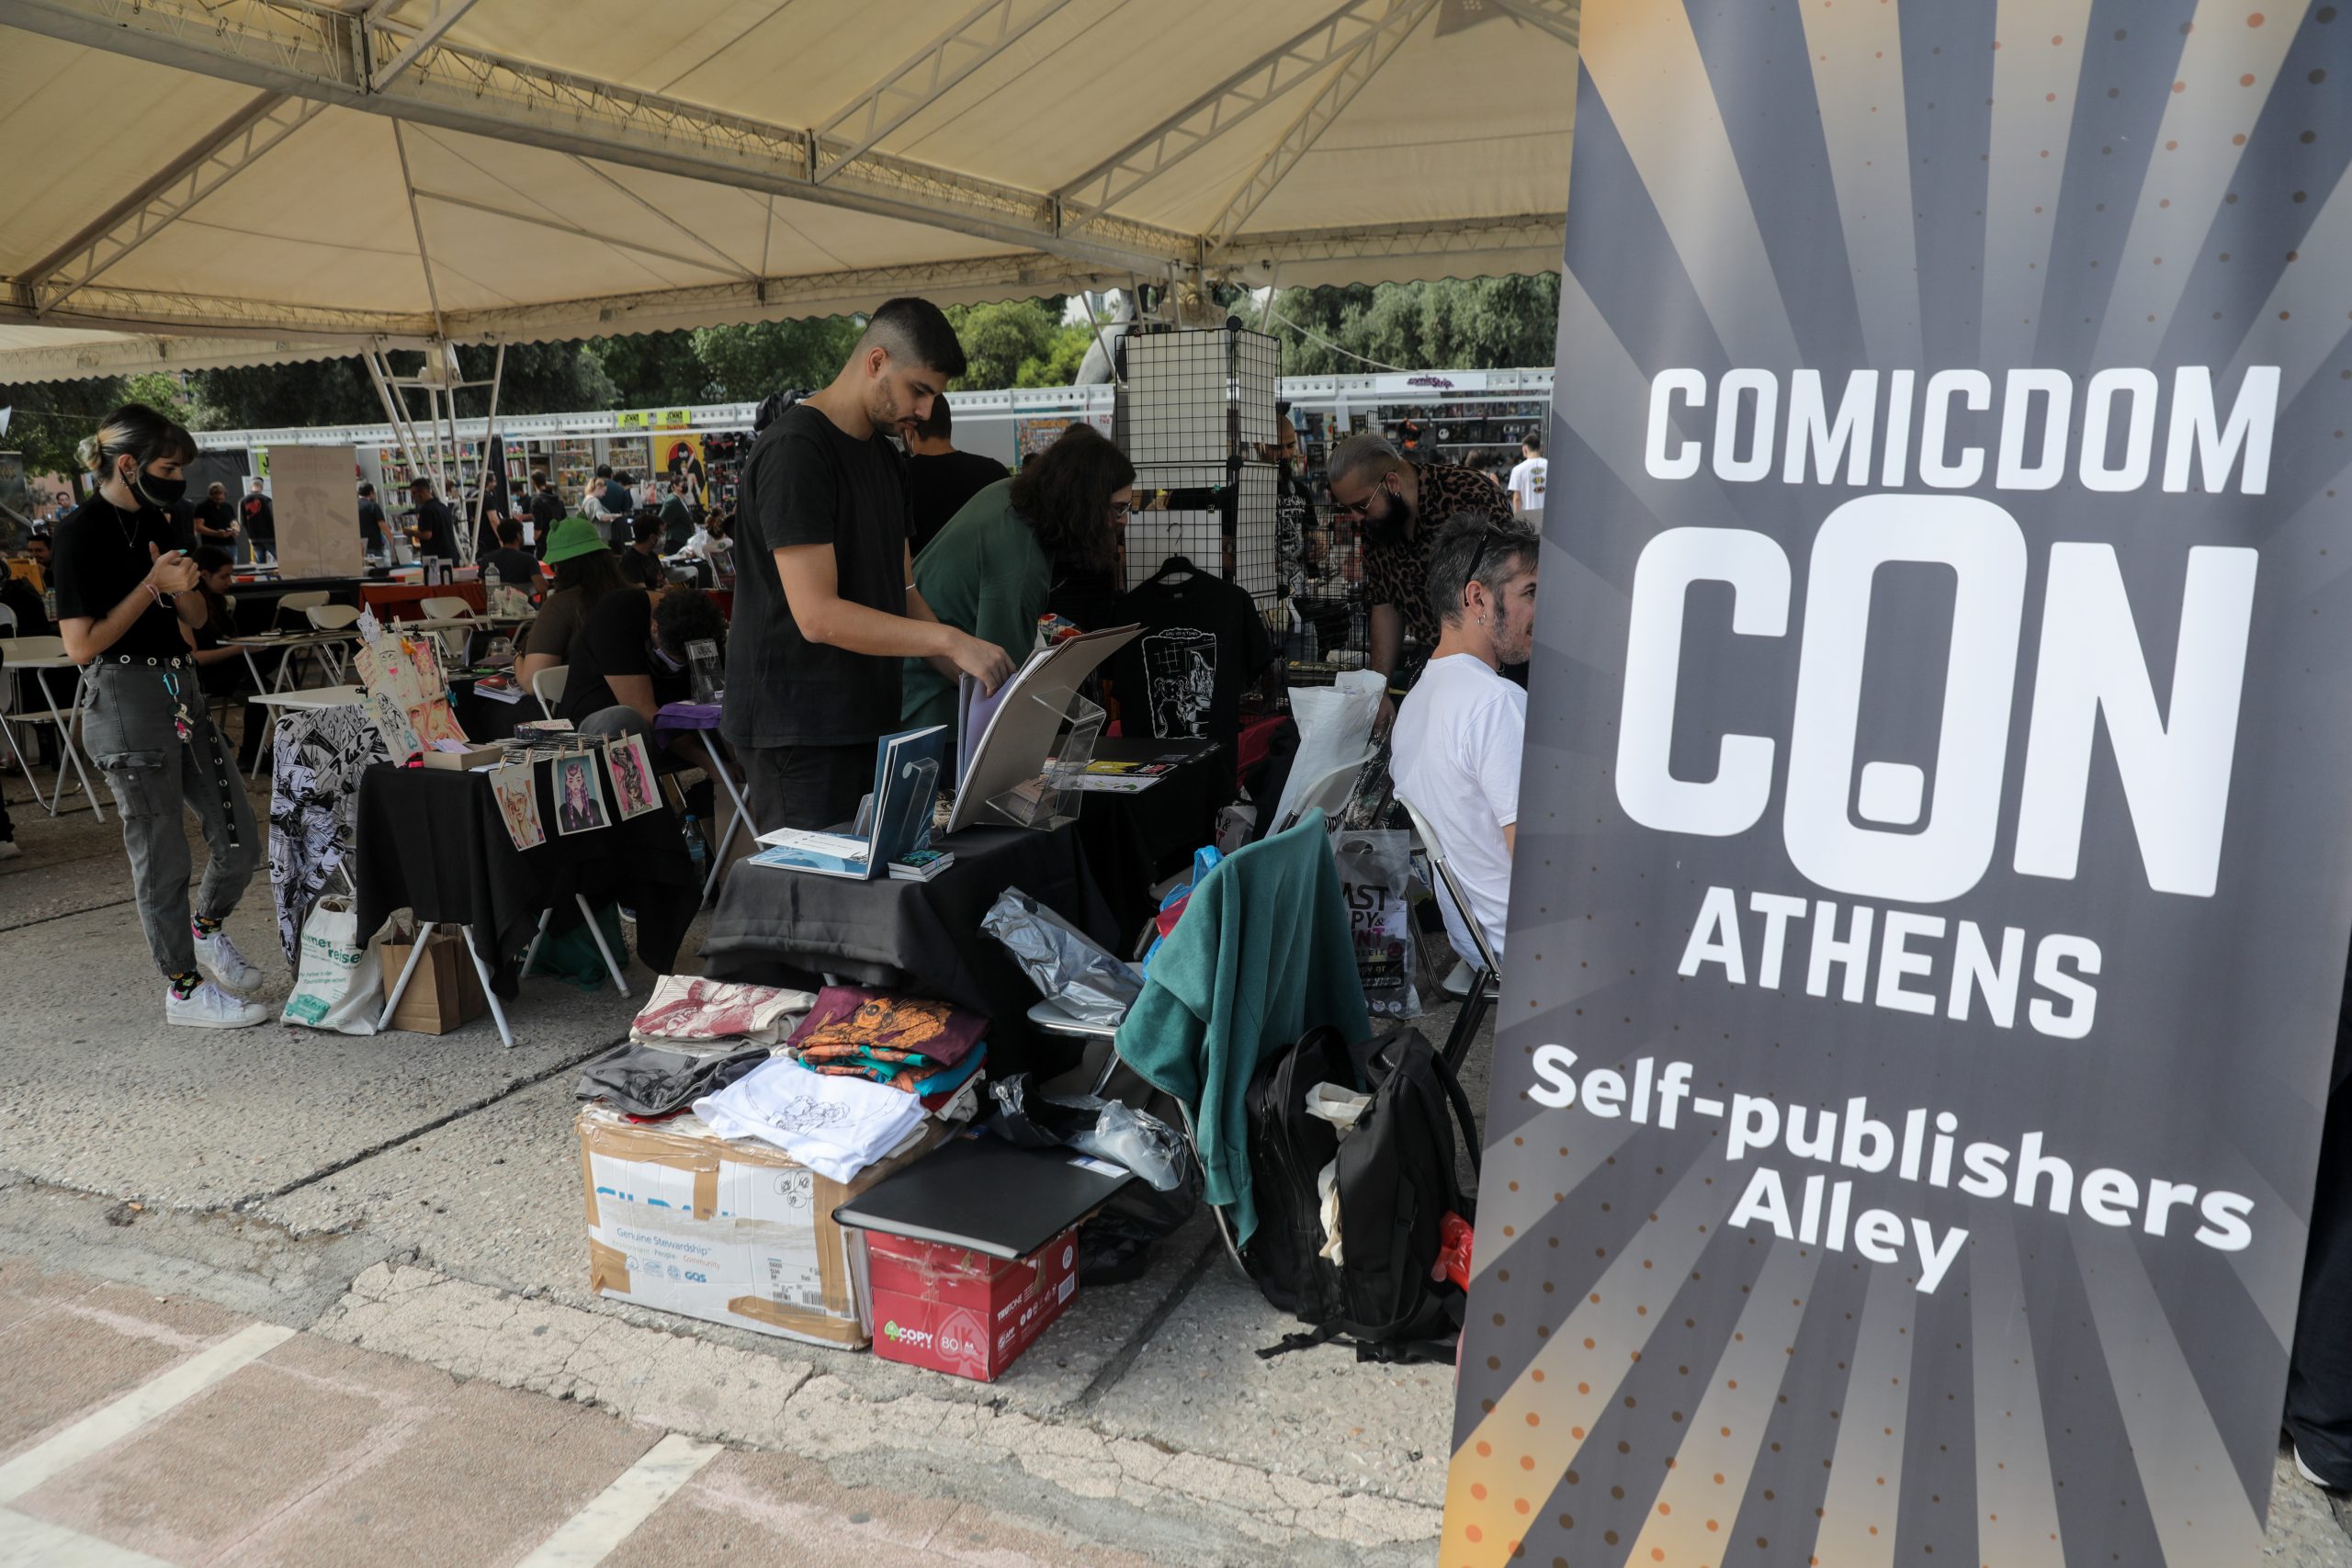 Σκιτσογράφος “τρώει” άκυρο από το Comicdom Athens λόγω εθνικιστικών έργων